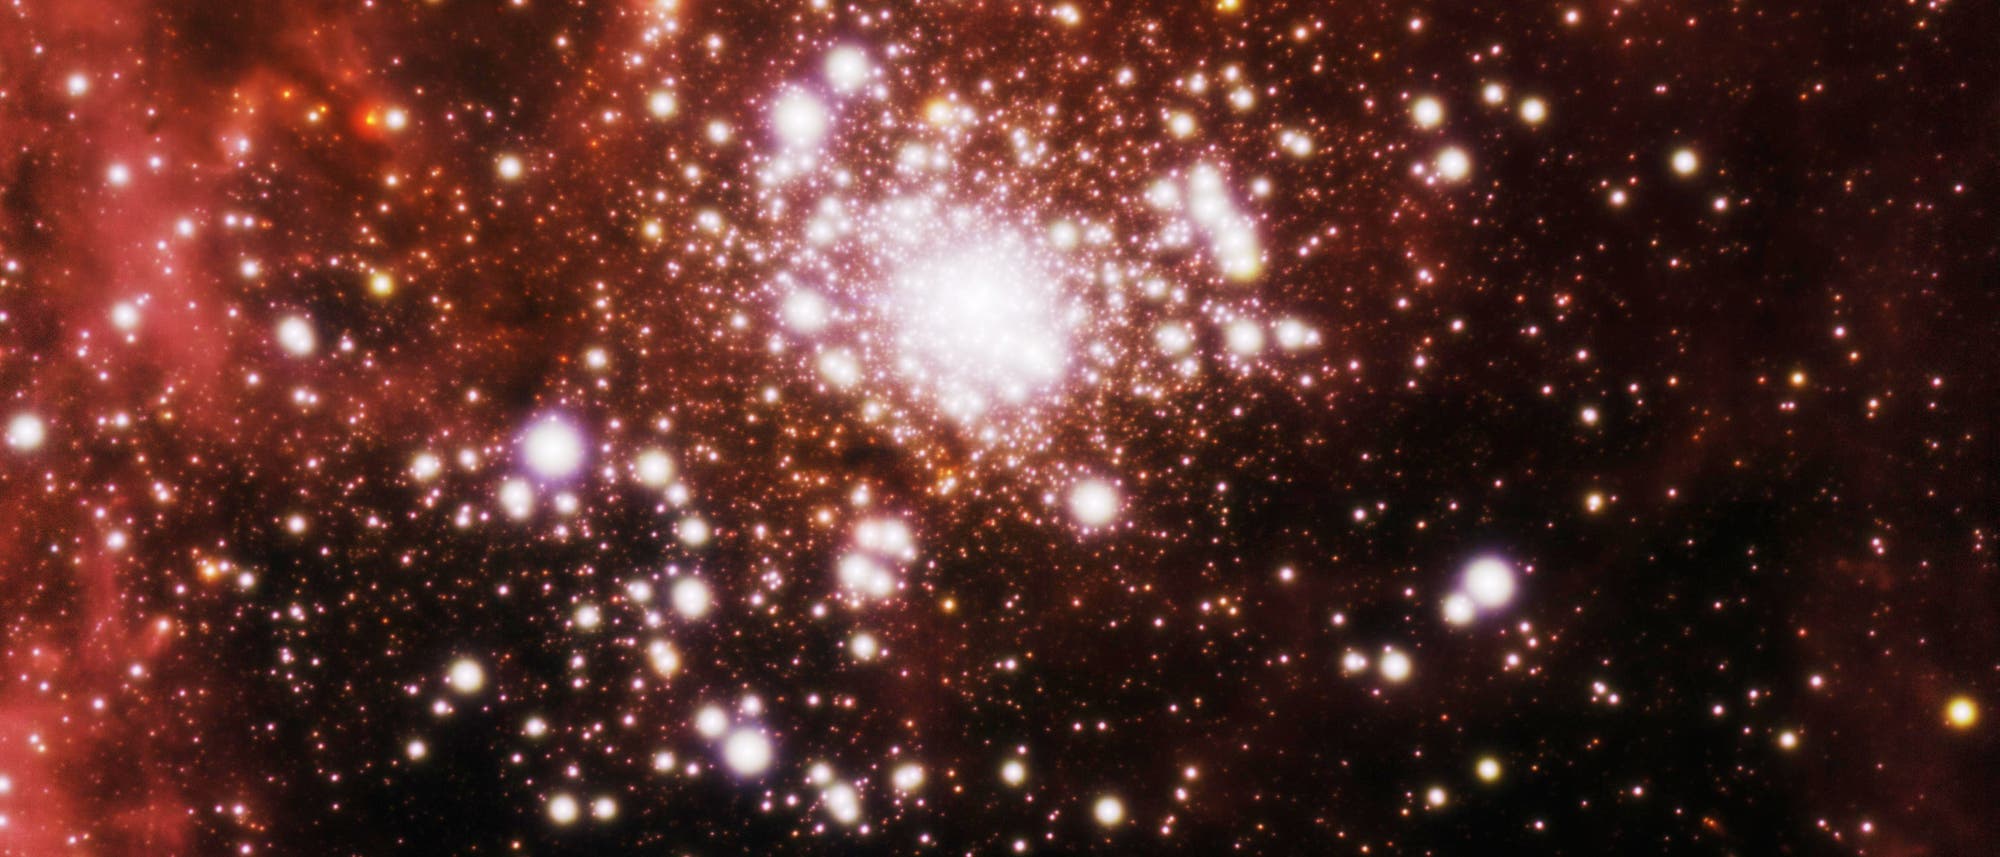 Der offene Sternhaufen RCW 136 in der Großen Magellanschen Wolke